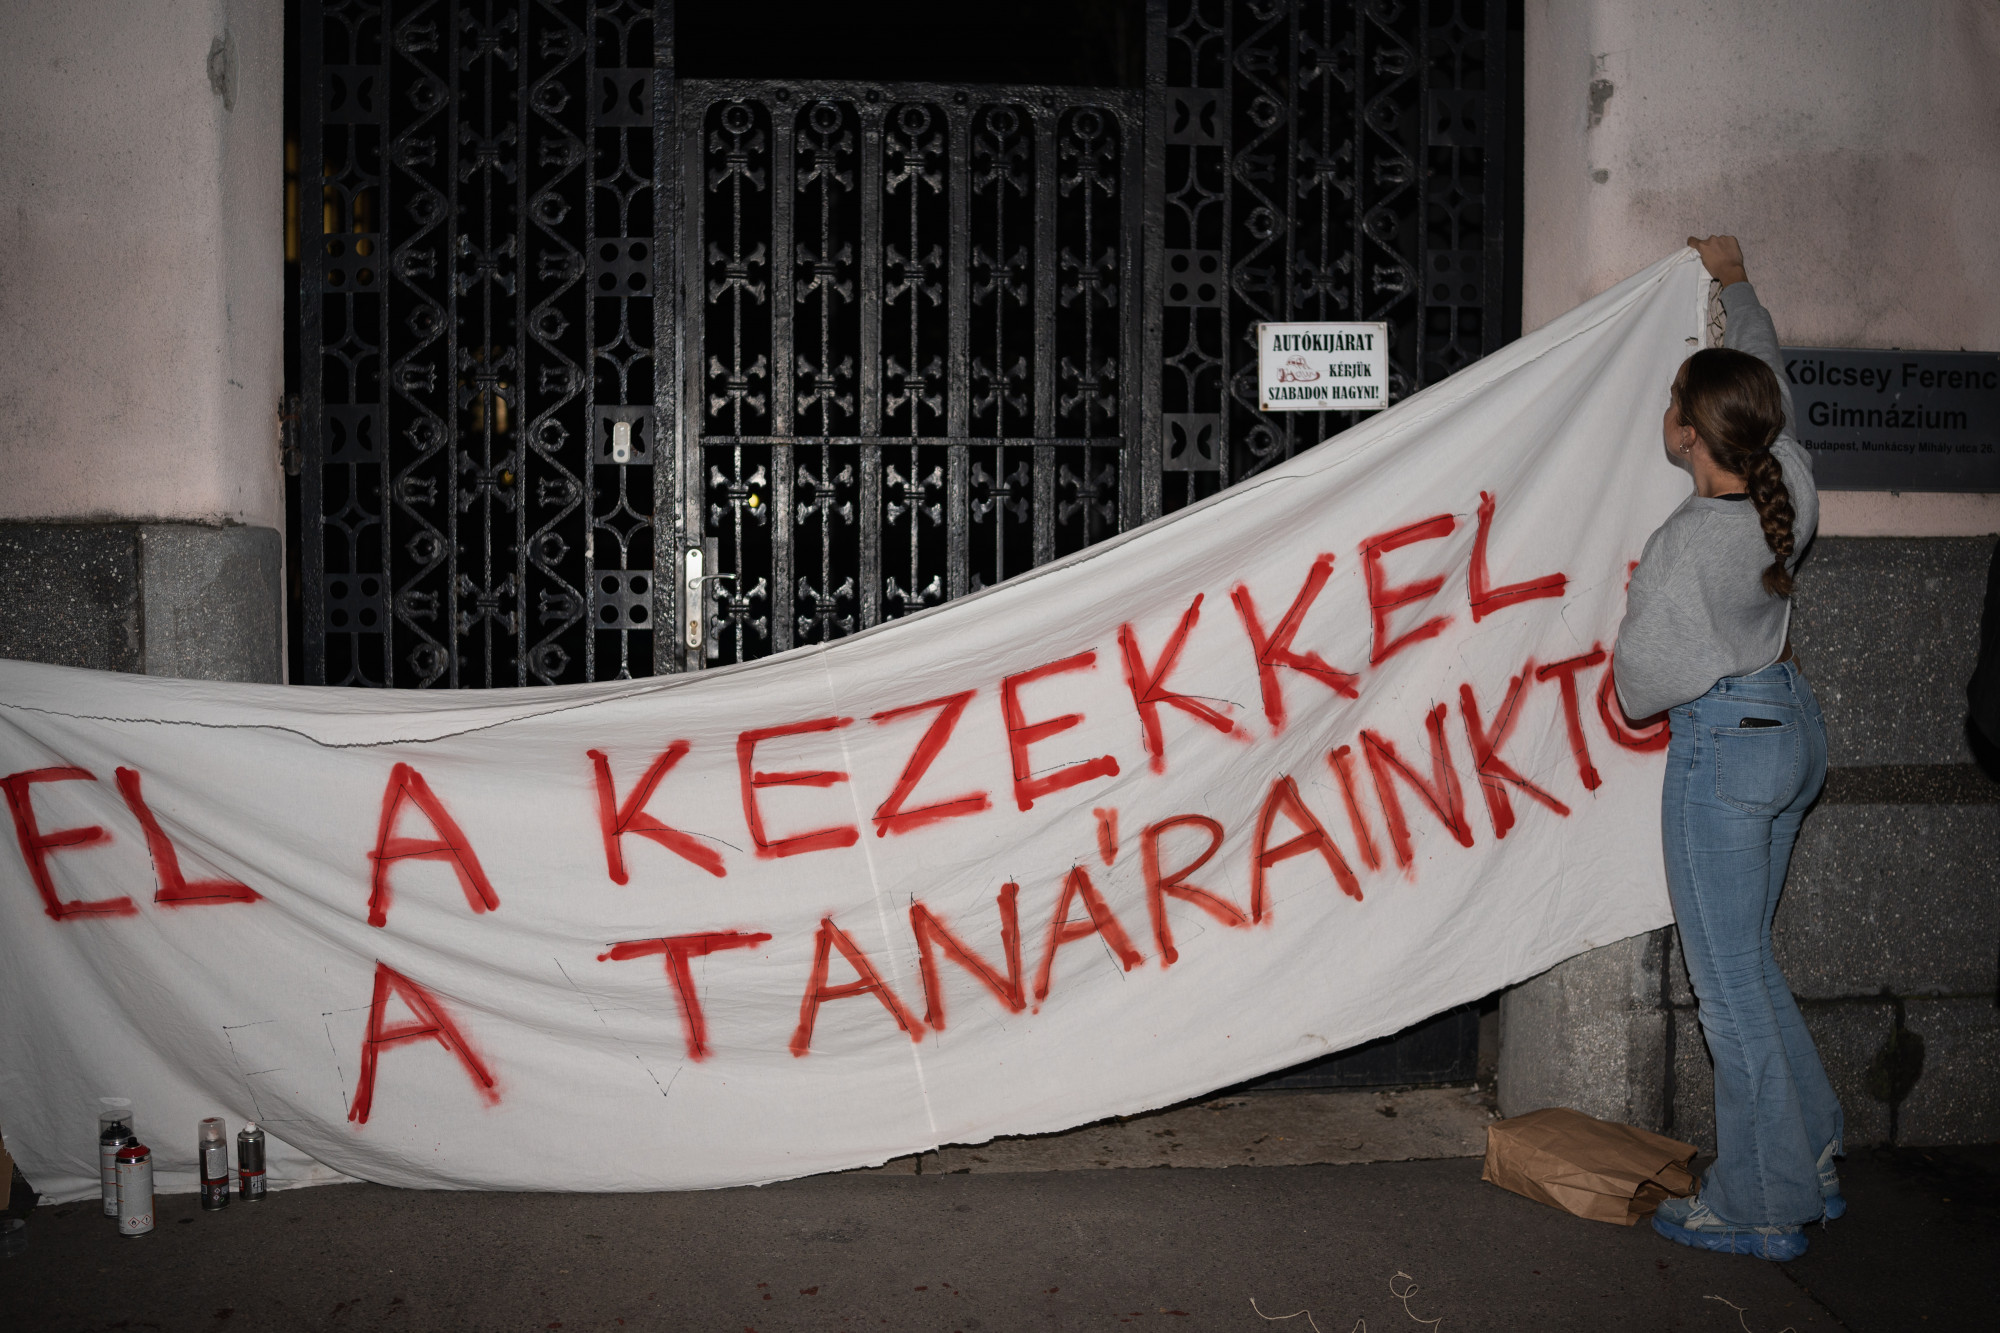 Tiltakozás a Kölcsey Ferenc Gimnáziumnál, miután a tankerület az iskola több tanárát kirúgta polgári engedetlenség miatt.